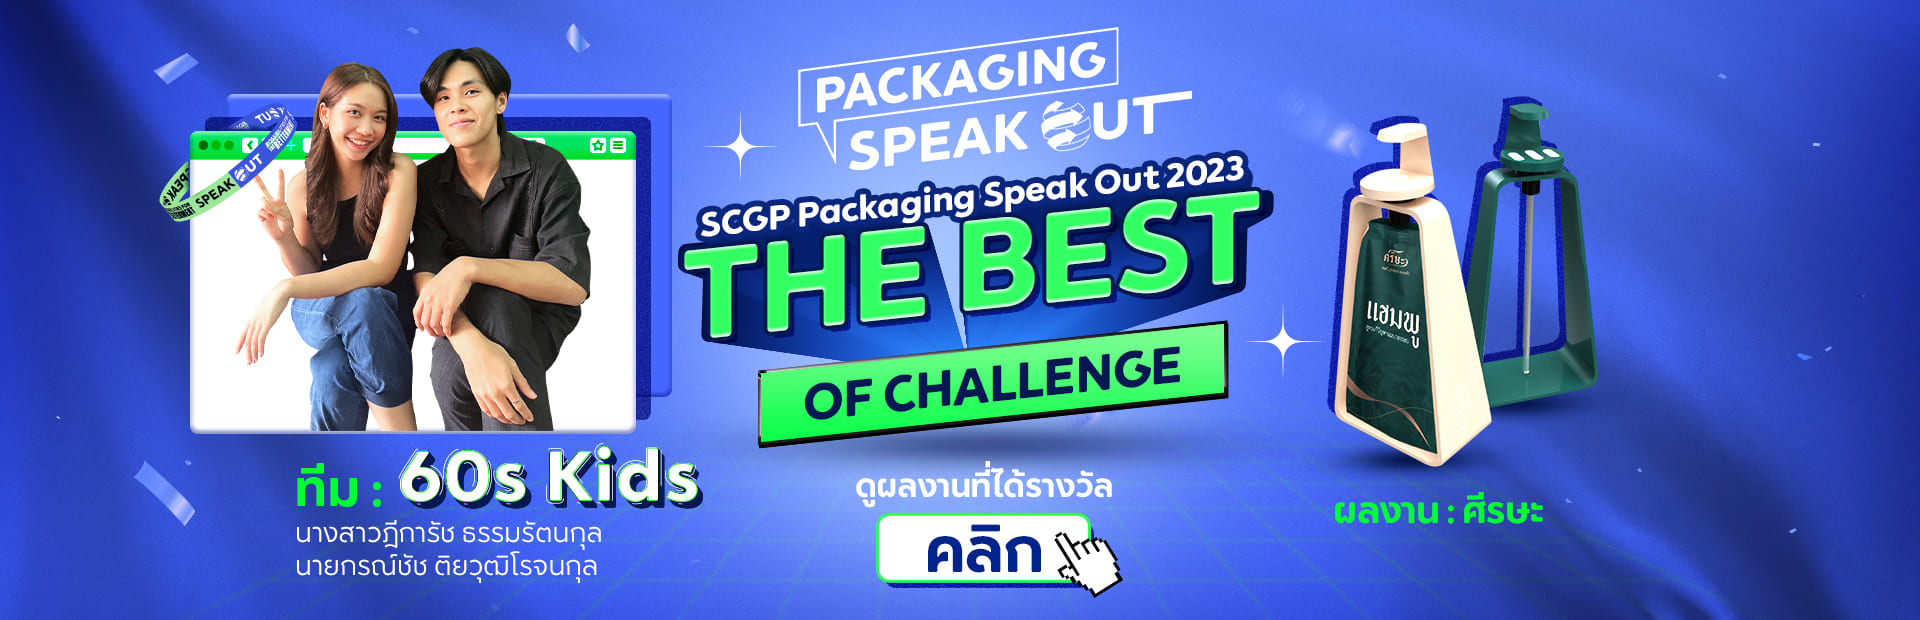 SCGP Packaging Speak Out 2022